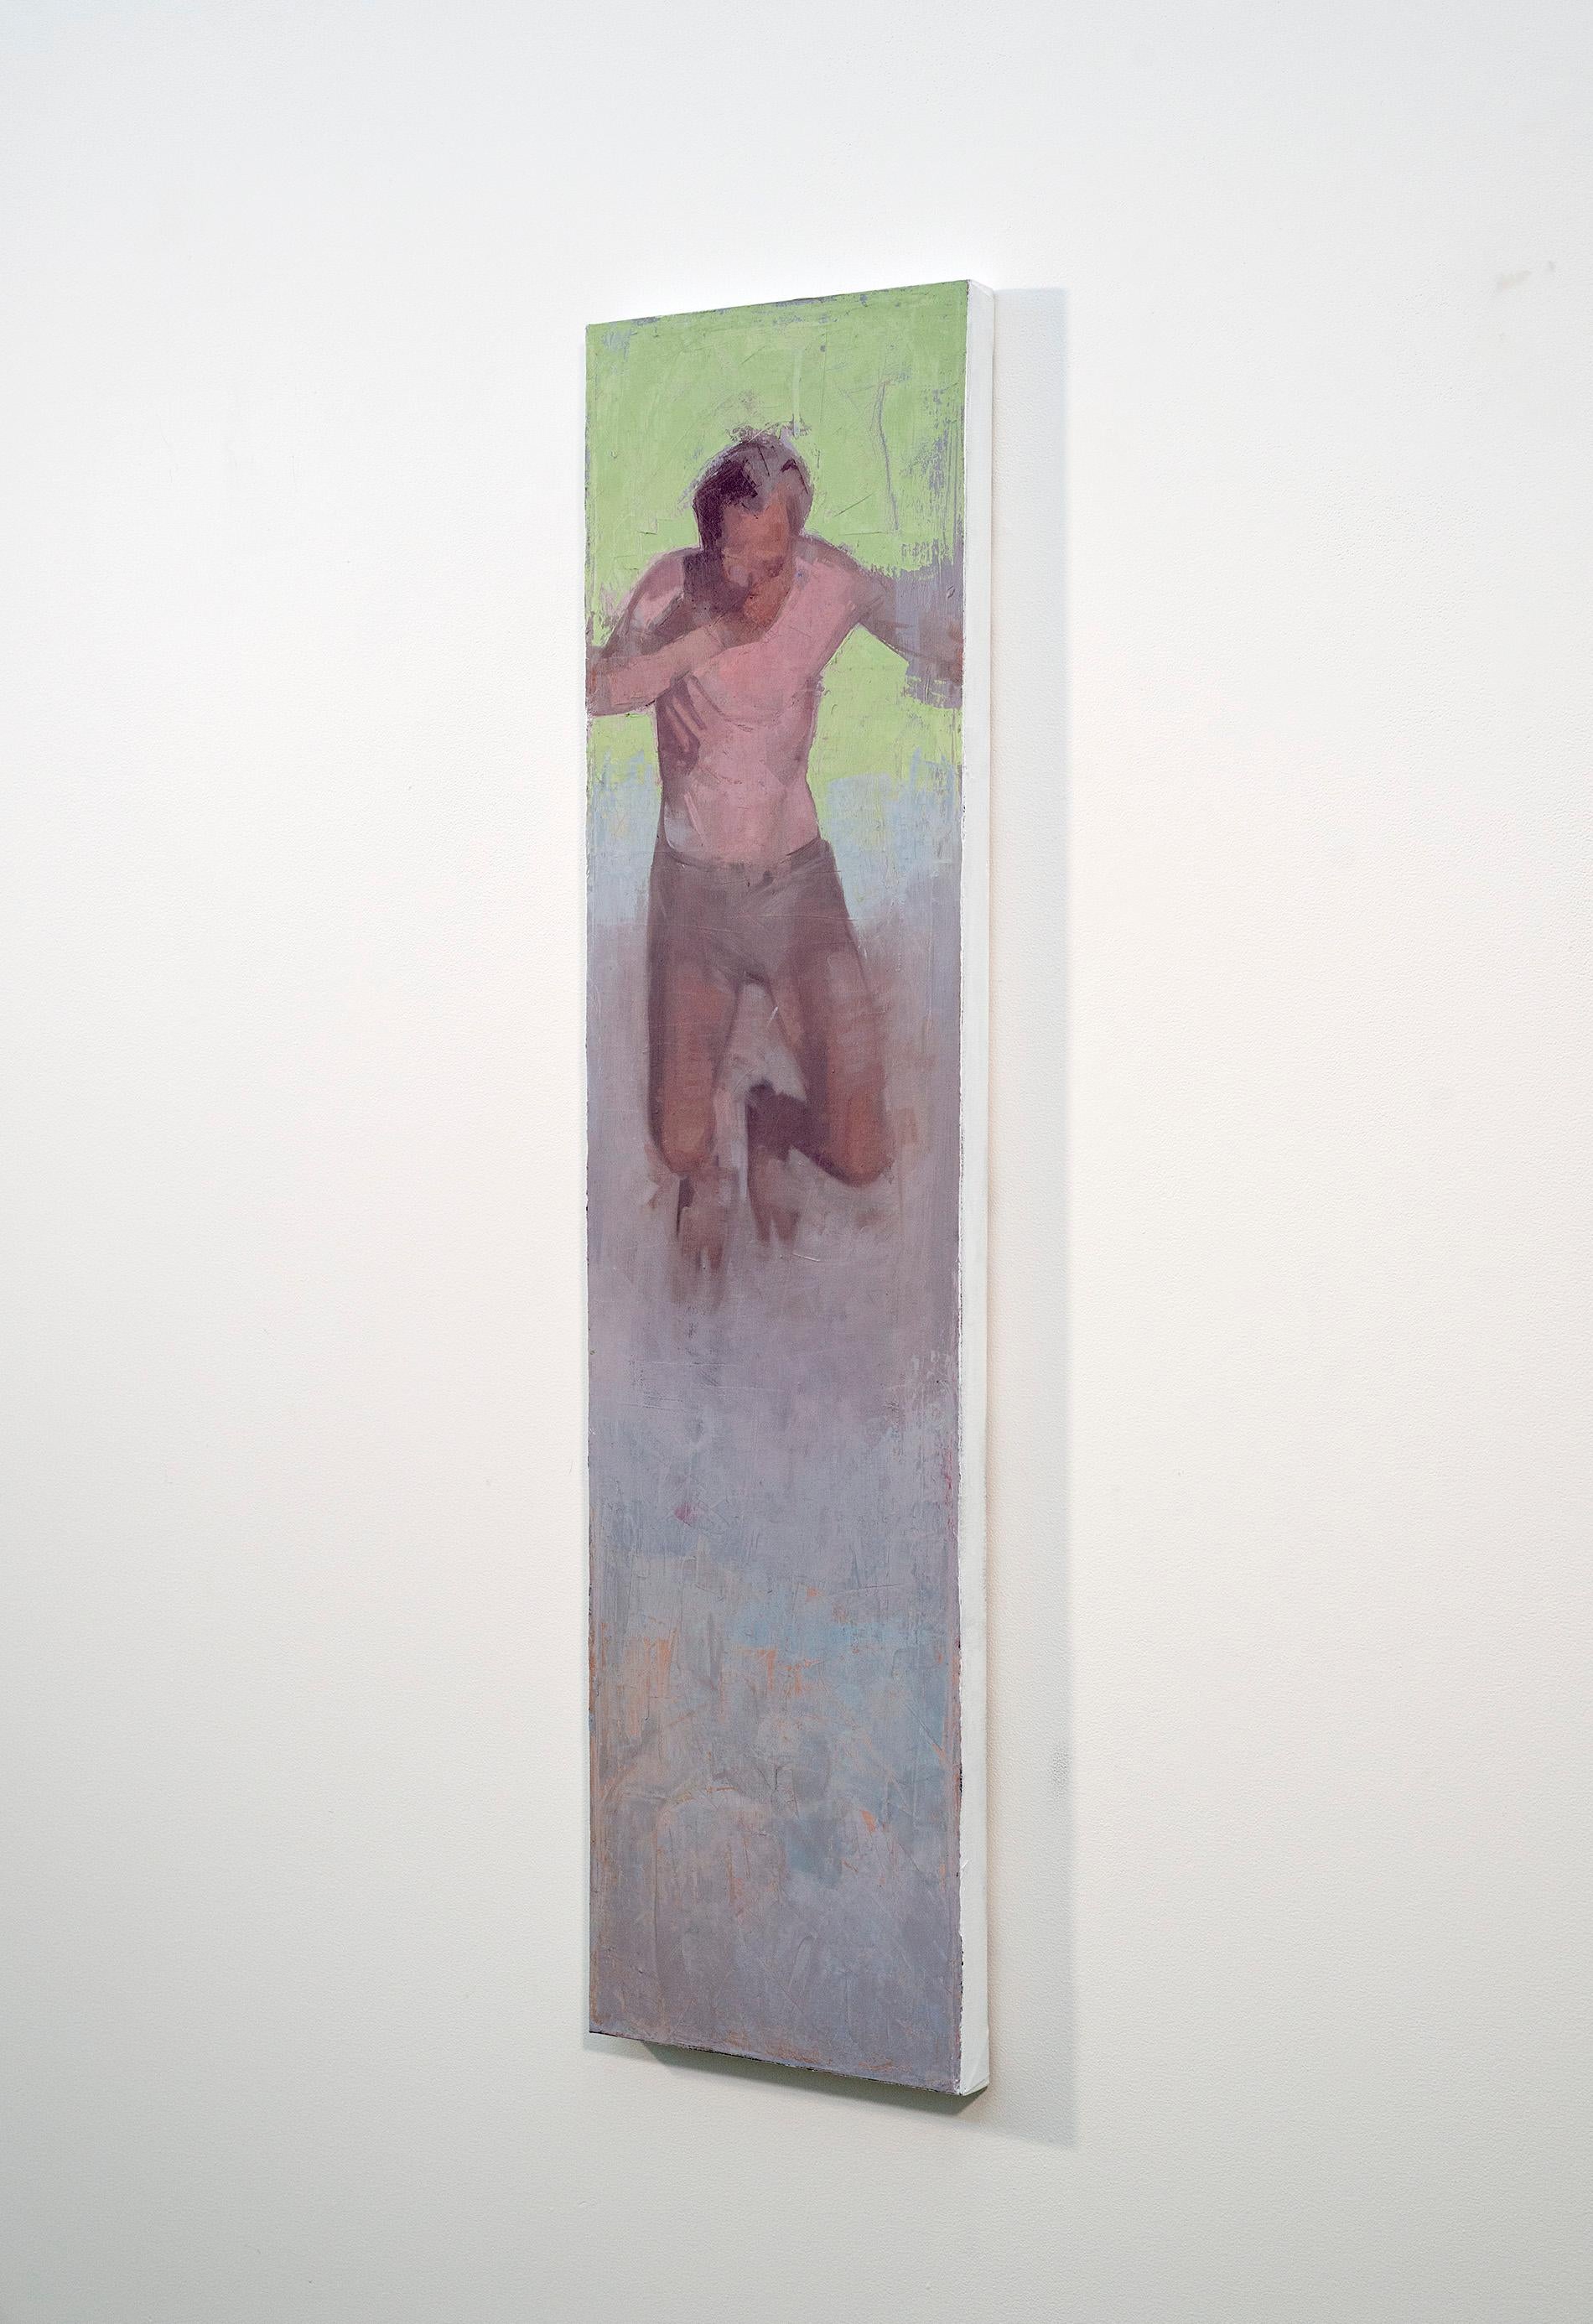 Diver No 1 – grün, lila, Porträt, männlich, abstrakt, figurativ, Öl auf Leinwand – Painting von Daniel Hughes